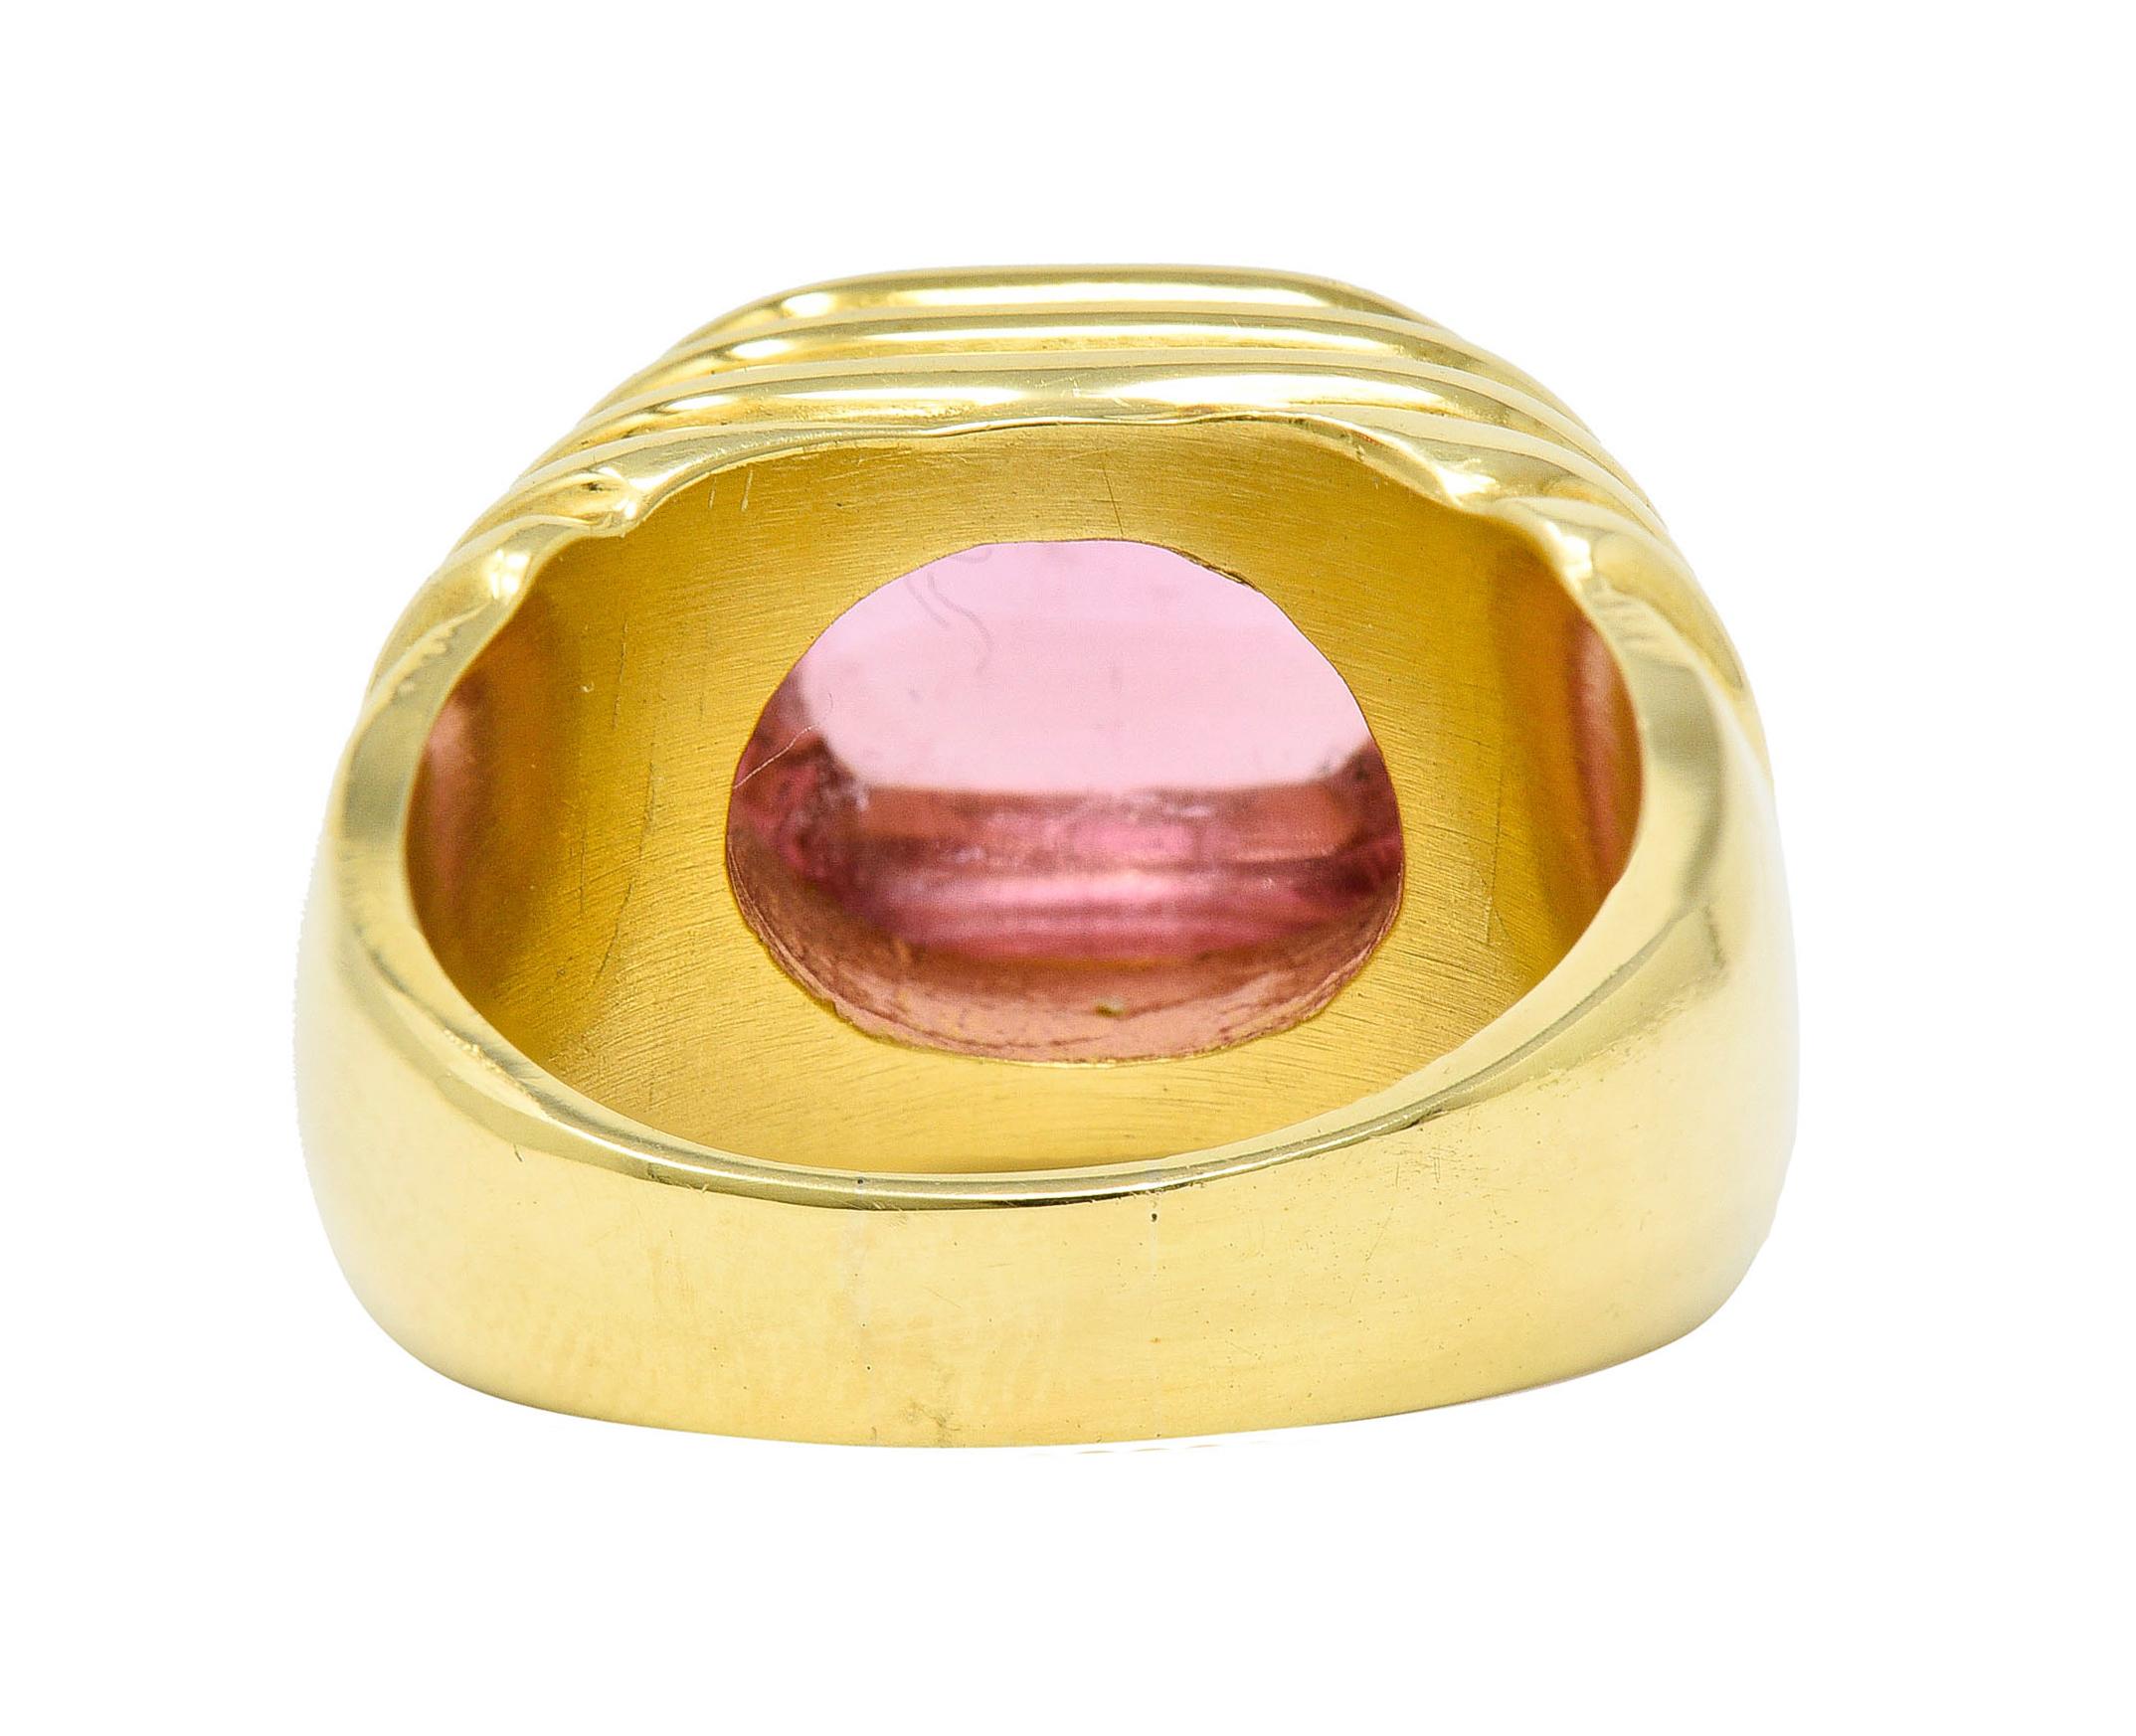 Cabochon Modern Pink Tourmaline 18 Karat Yellow Gold Gemstone Ring